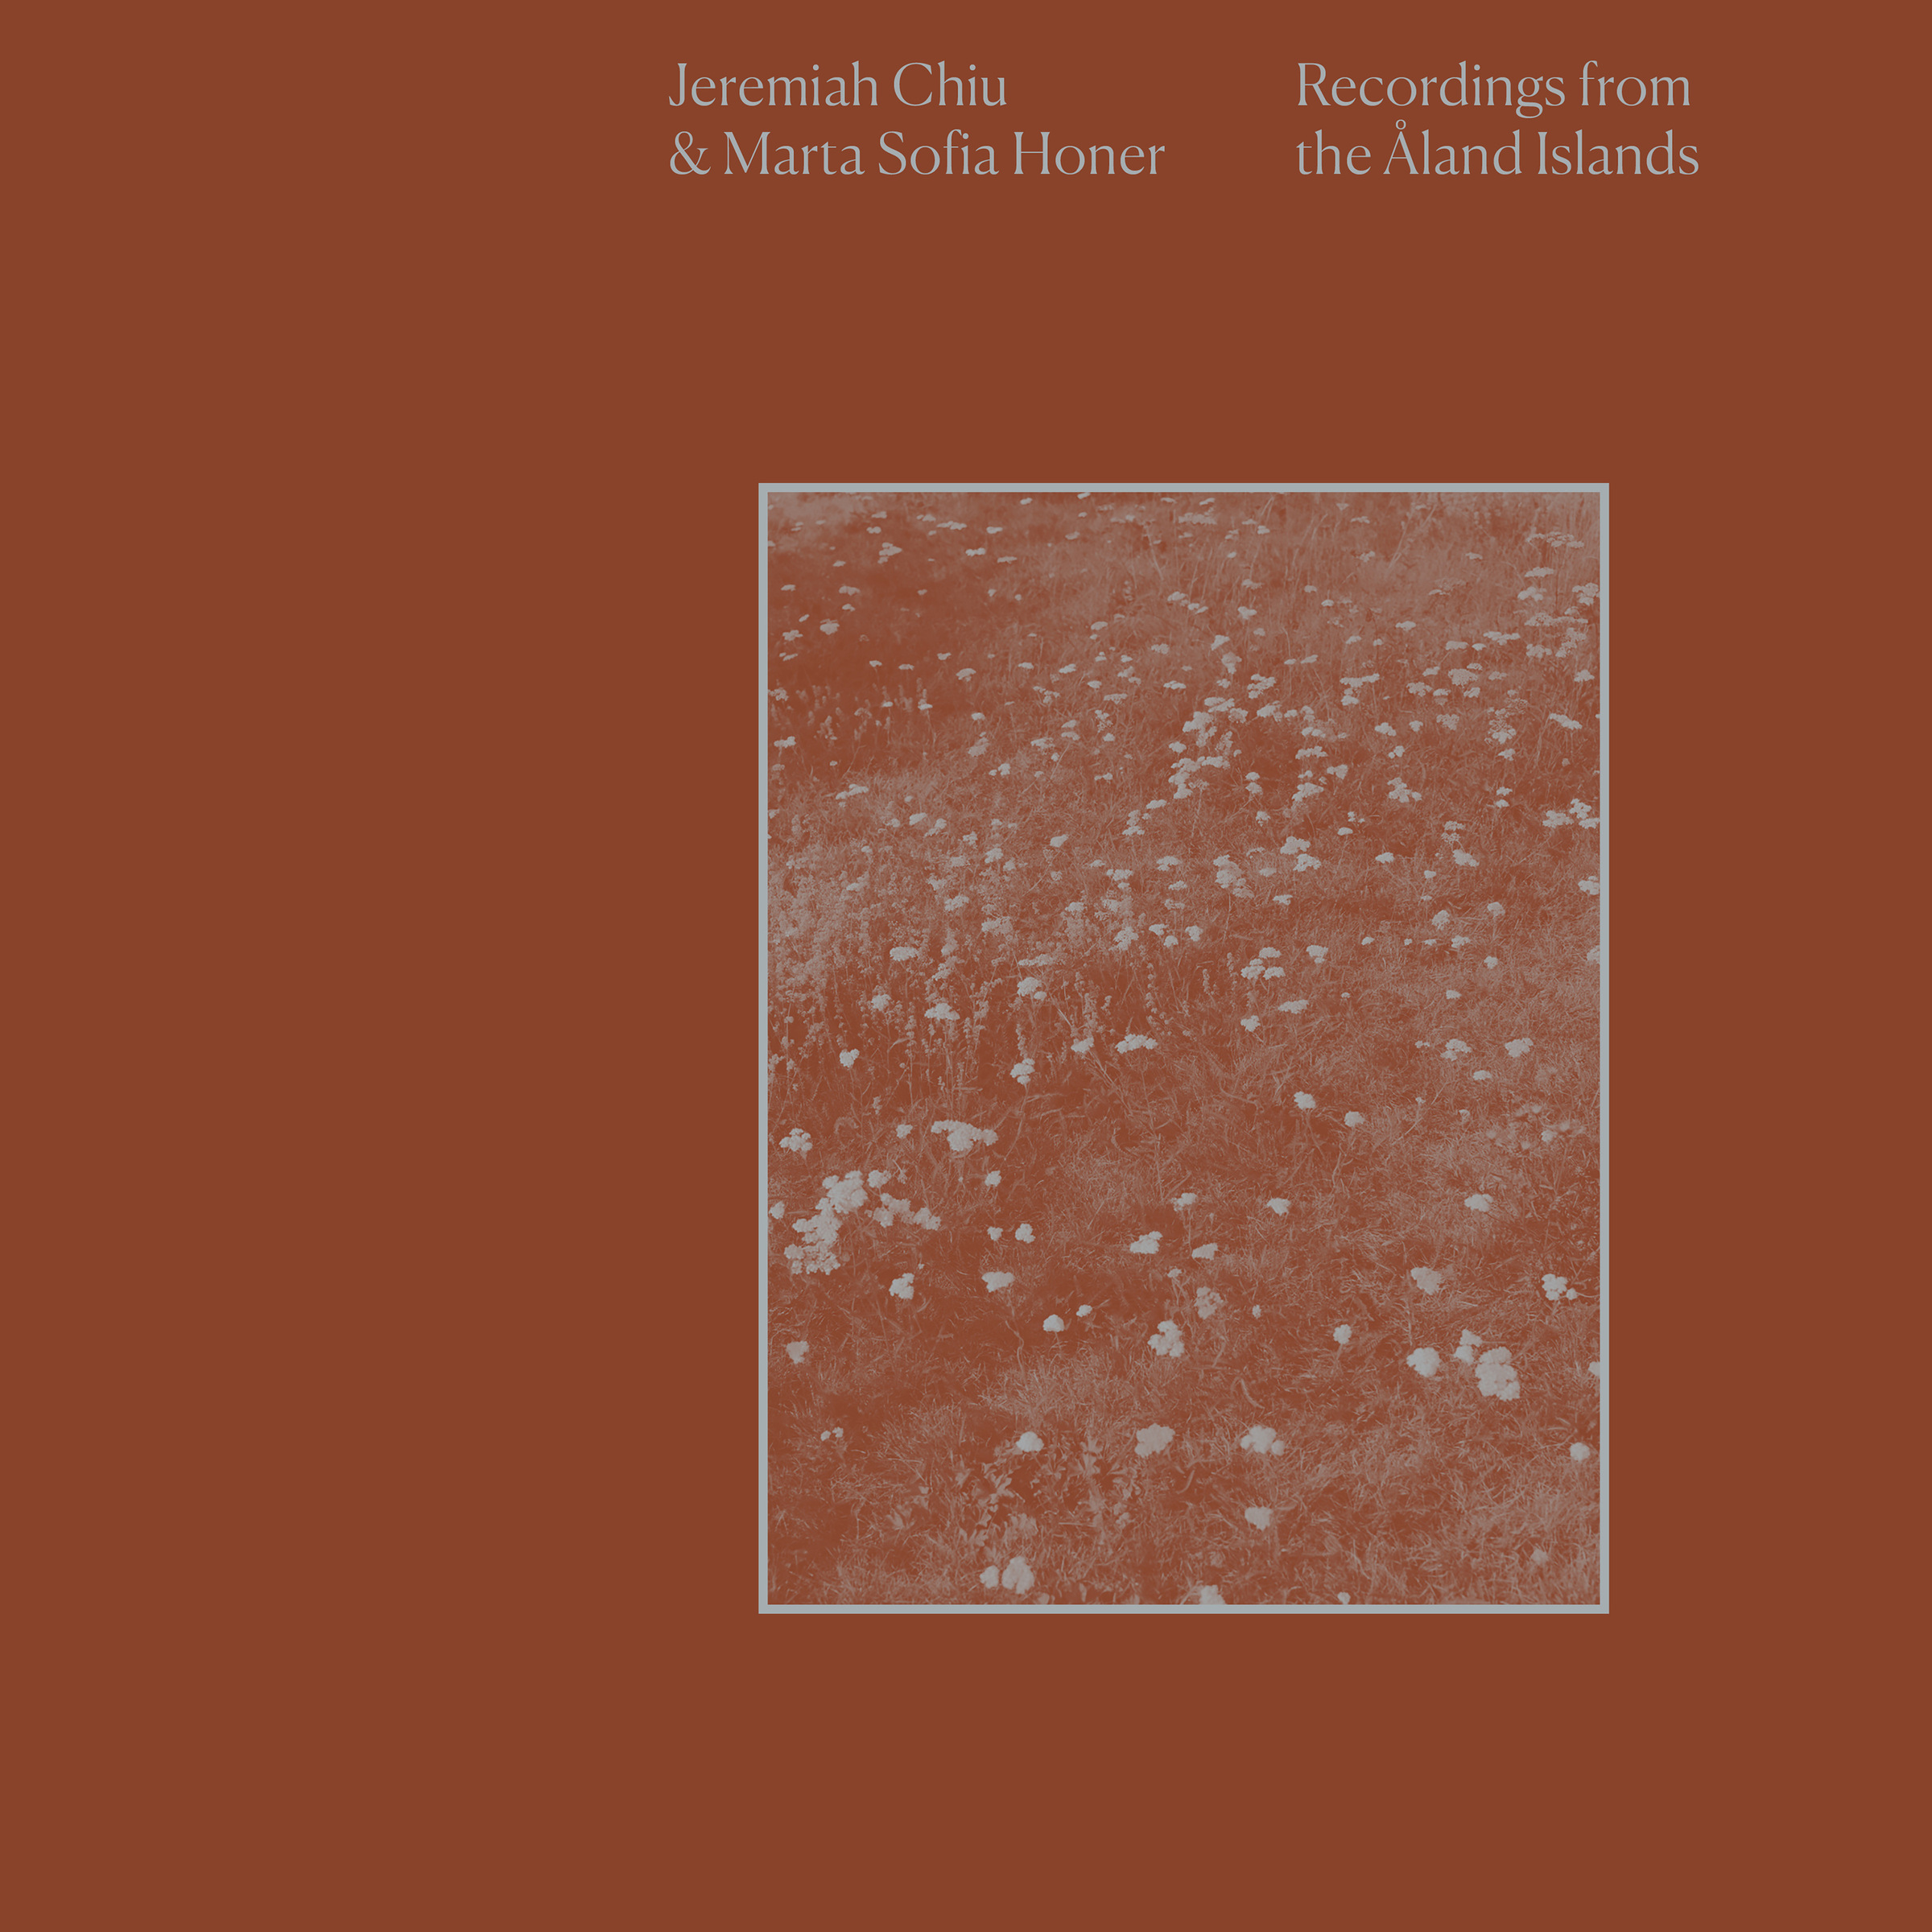 Jeremiah Chiu & Marta Sofia Honer — Recordings from the Åland Islands cover artwork